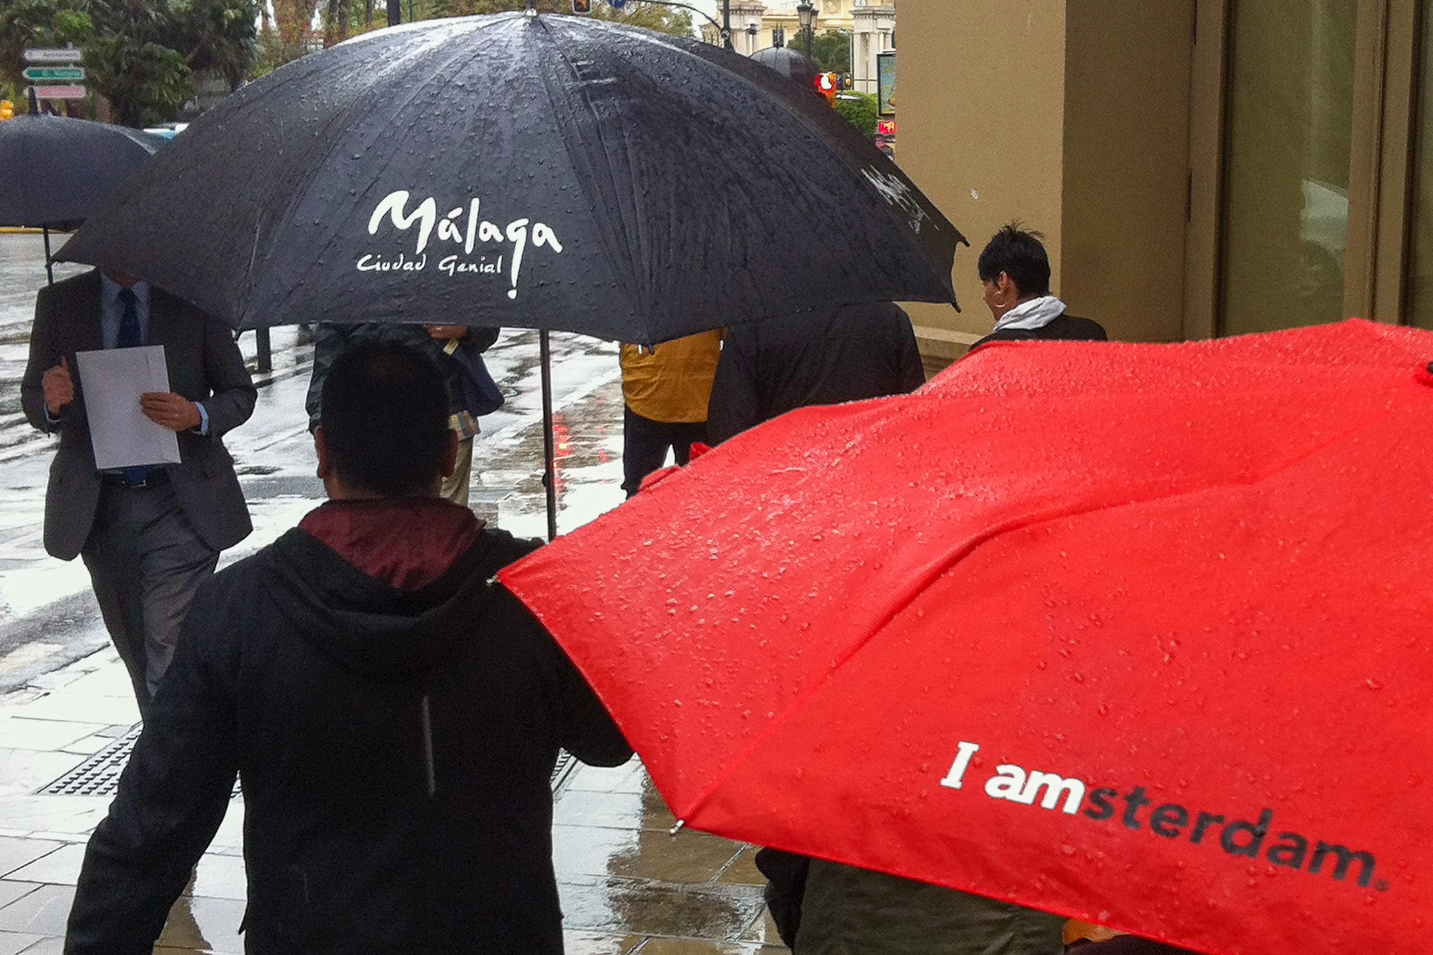 Wo regnet es häufiger? In Málaga oder in Amsterdam? Das fragen diese beiden Regenschirme